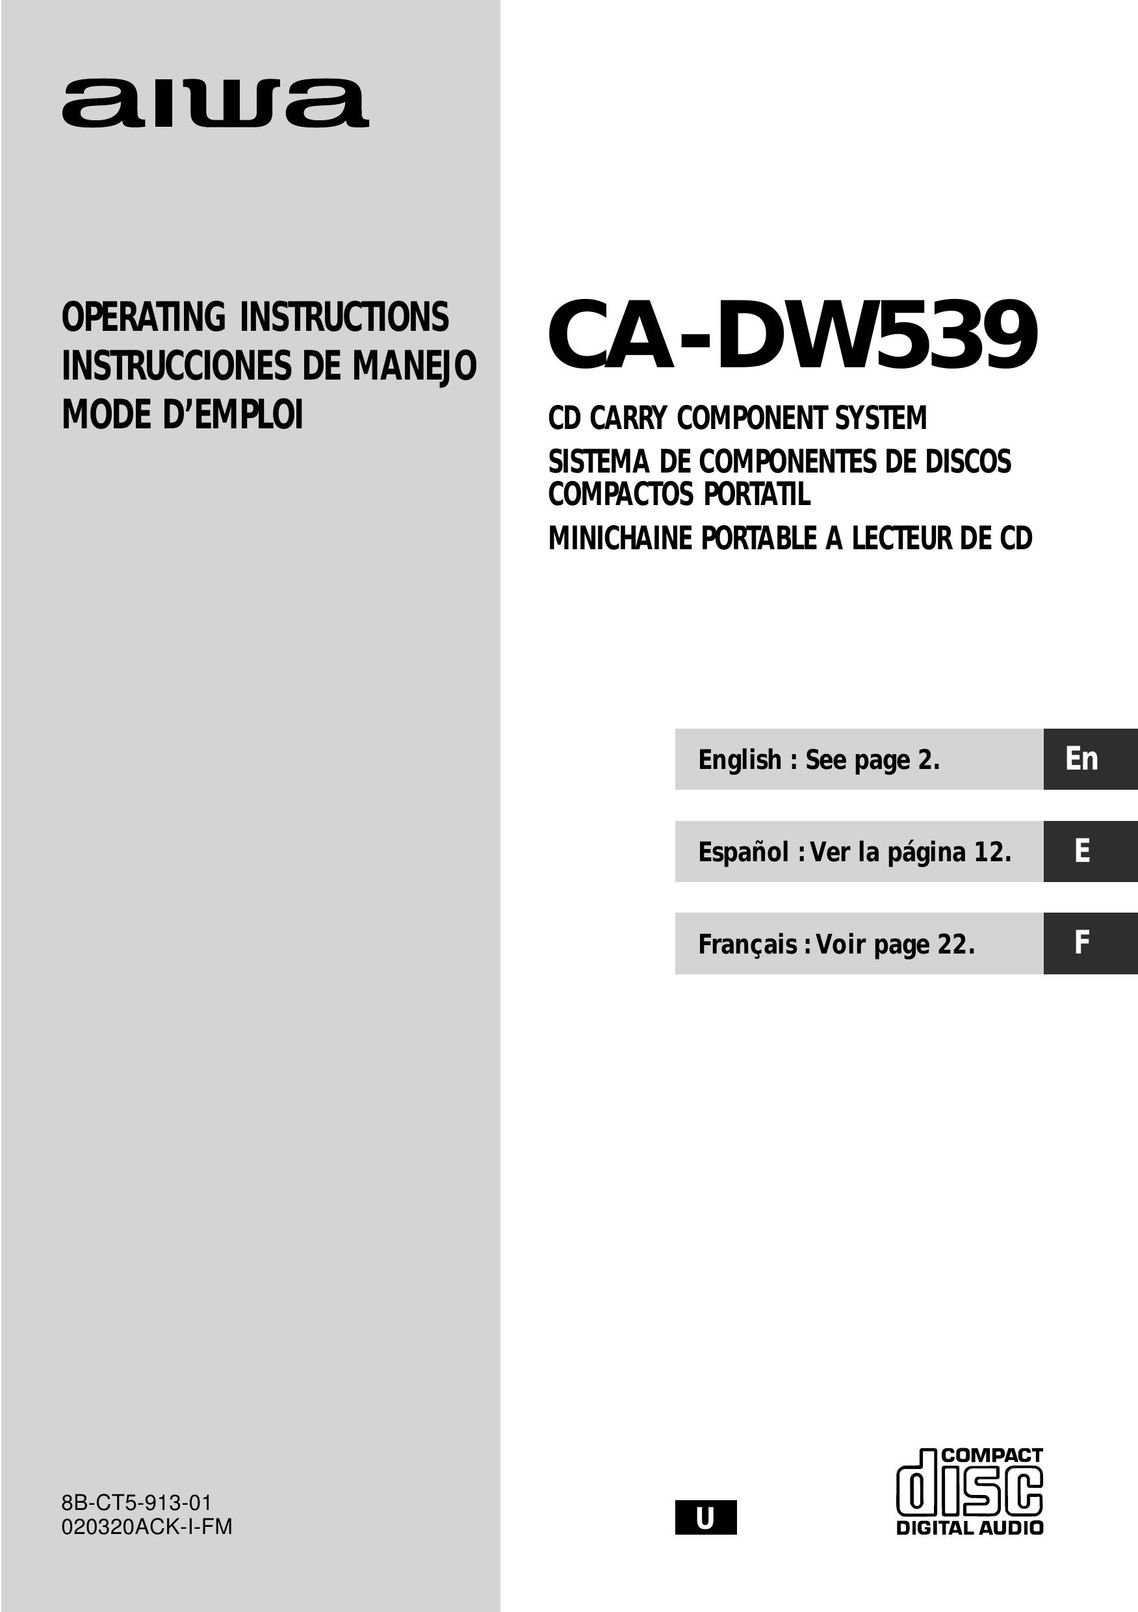 Aiwa CA-DW539 CD Player User Manual